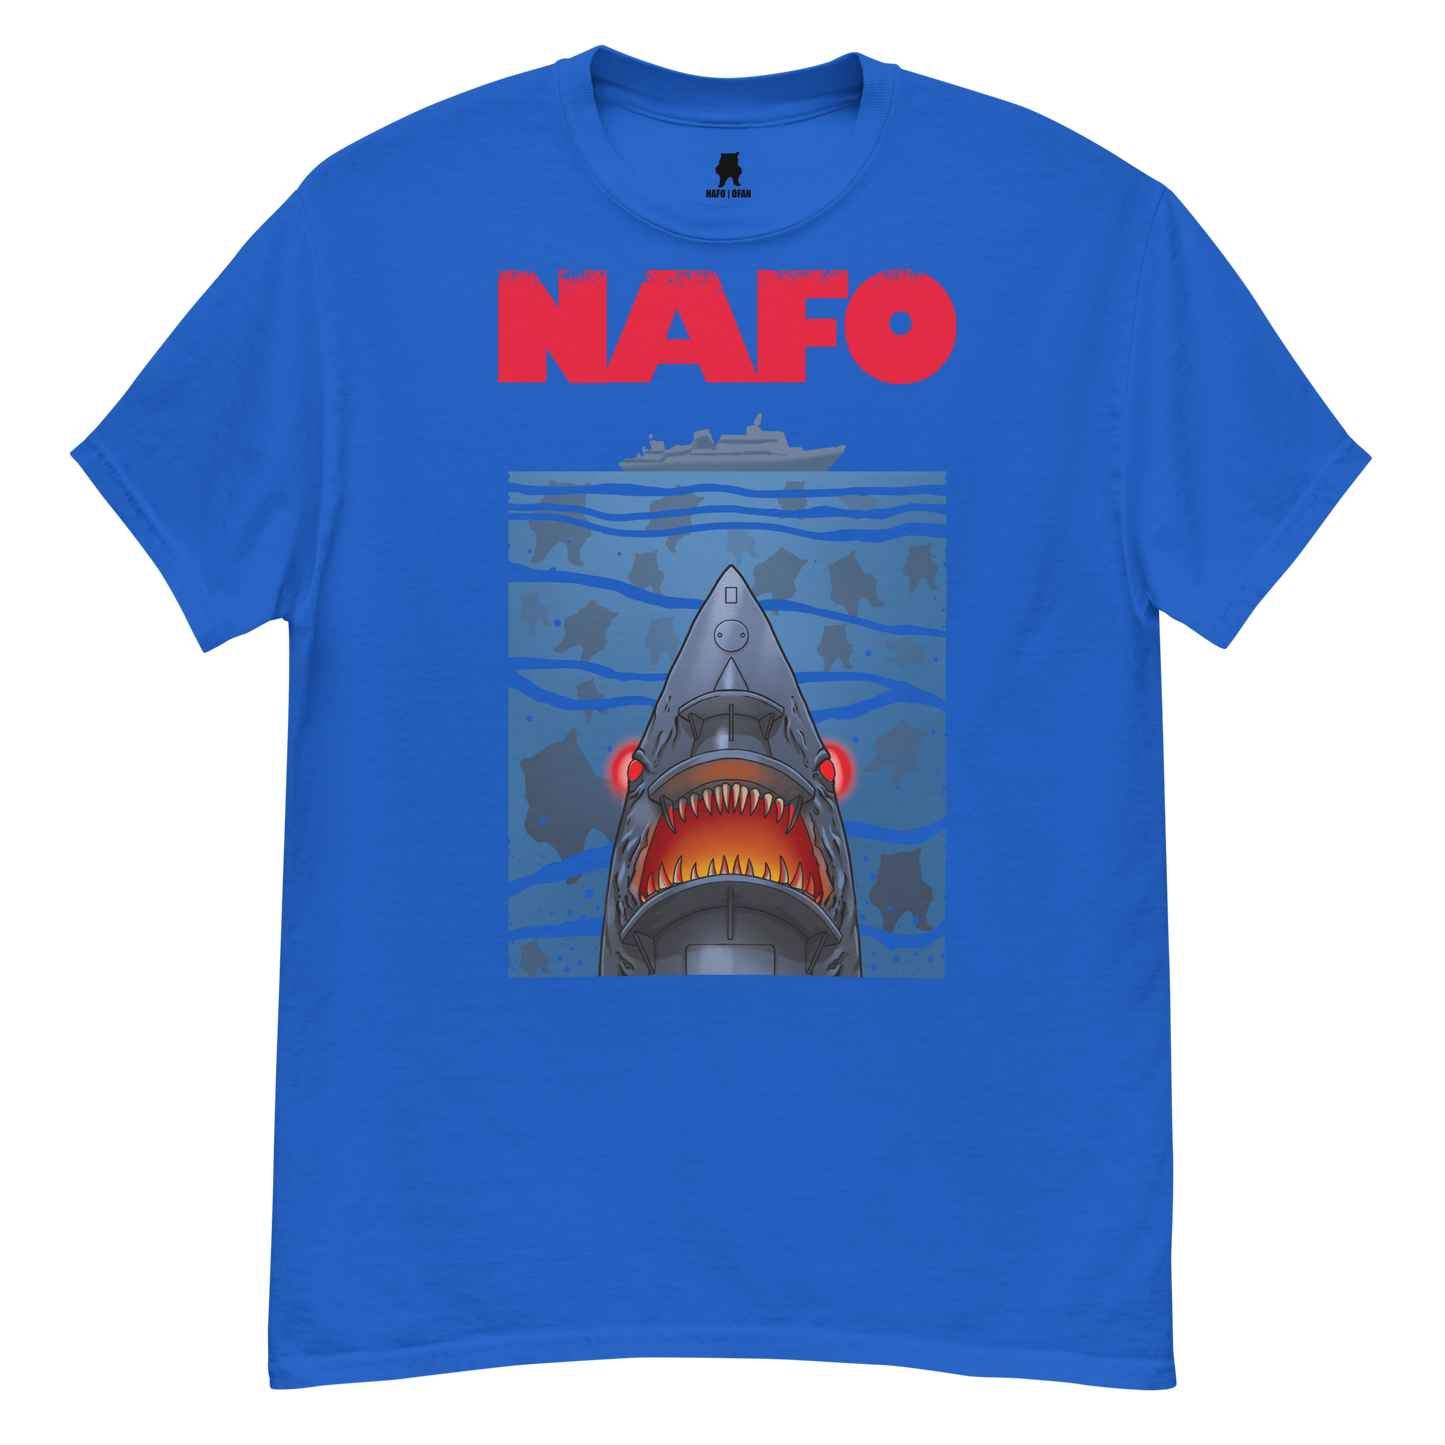 NAFO x Grandpa Yurko Shark Drone Ship T-Shirt